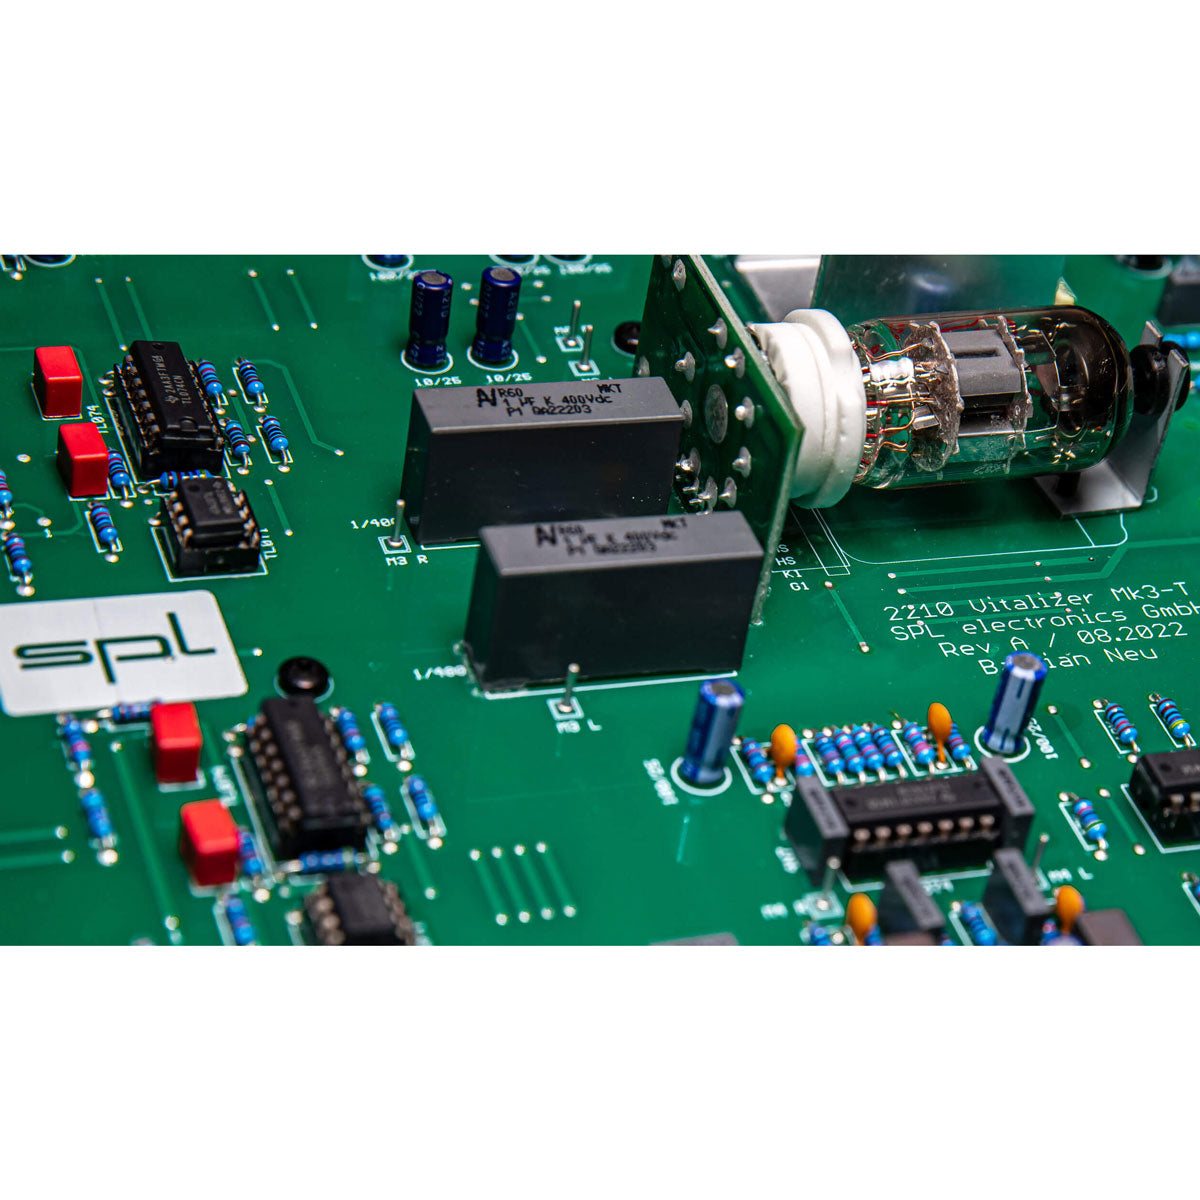 SPL Vitalizer Mk3-T Stereo Harmonic Enhancer/Exciter/EQ